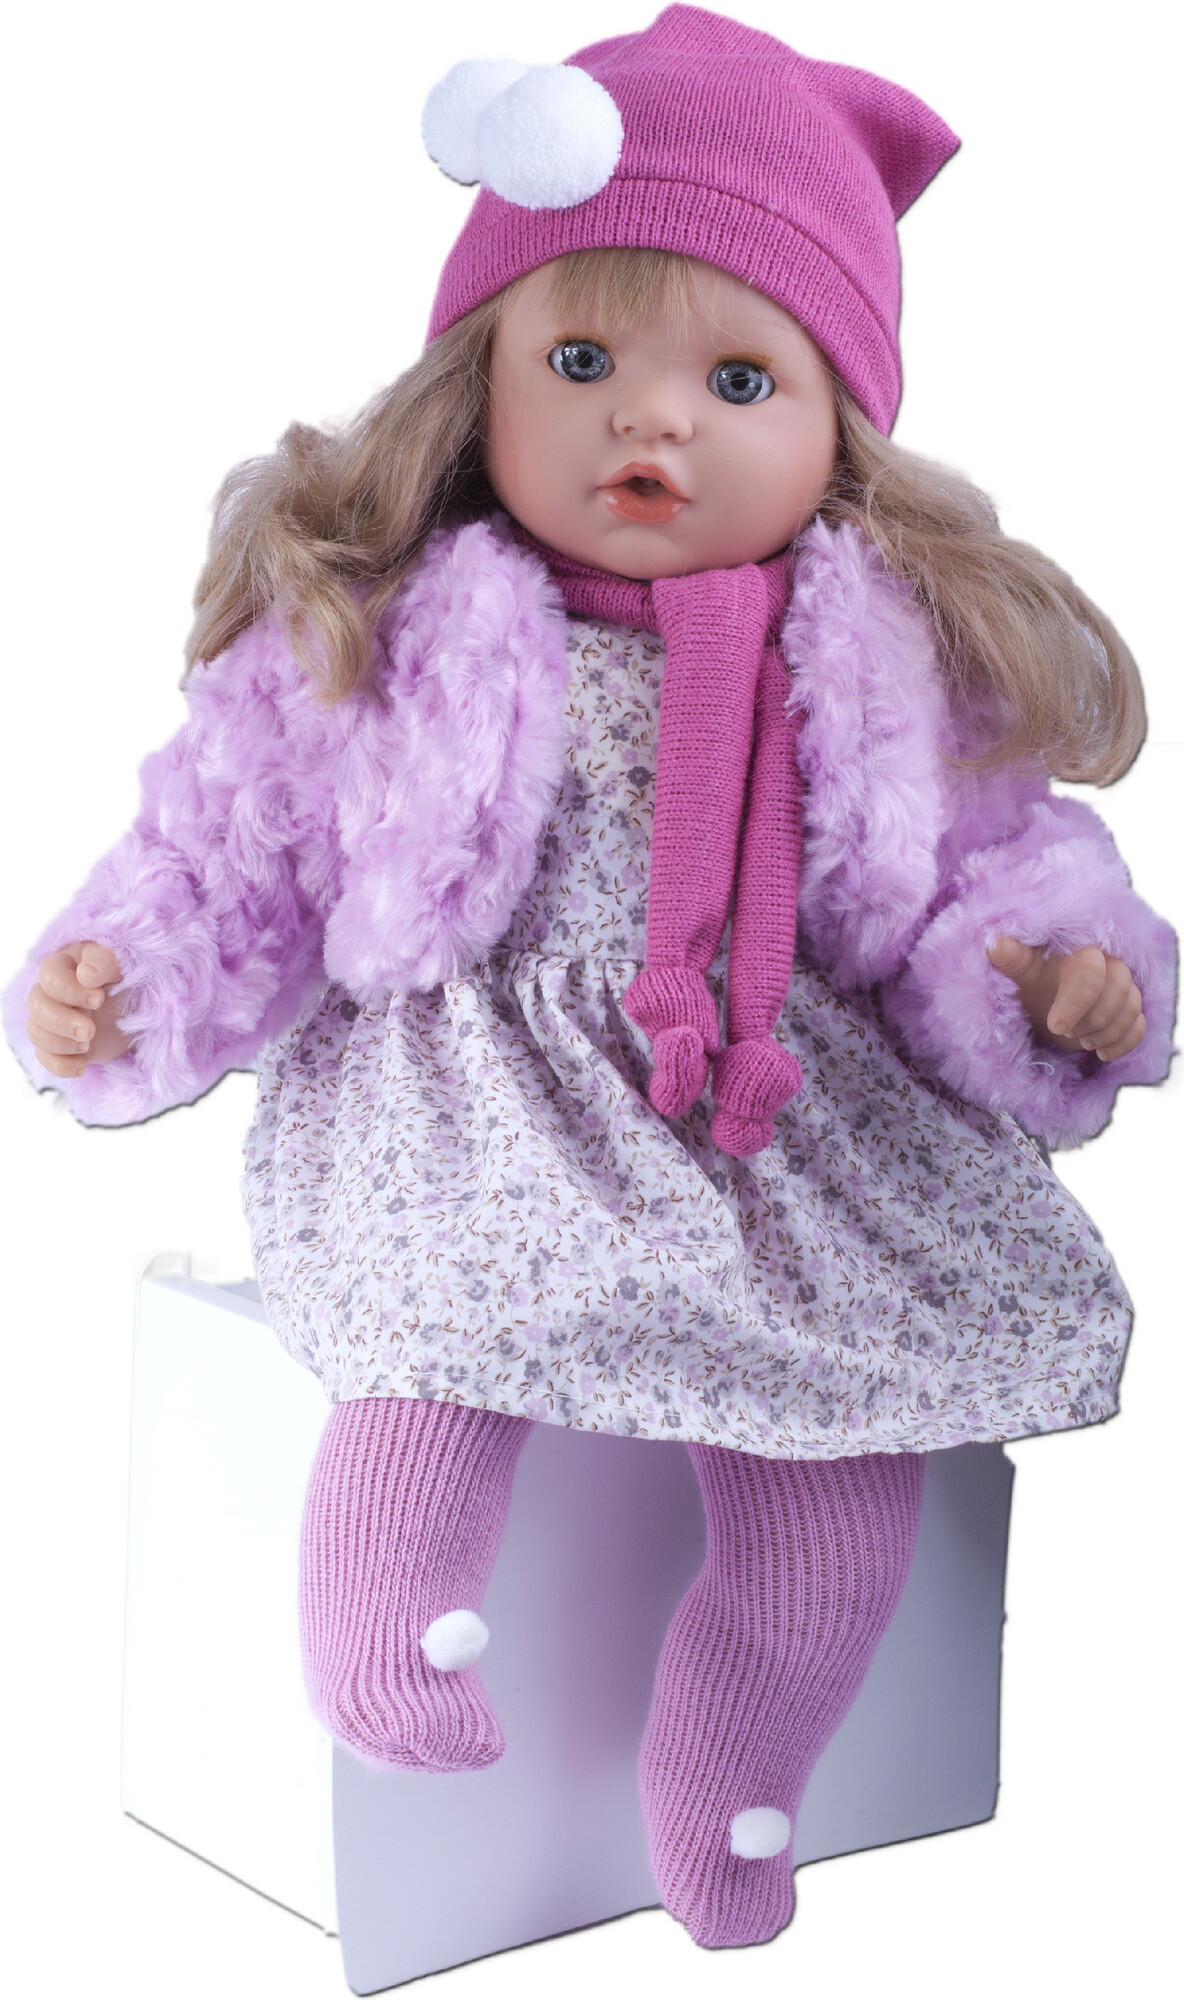 TYBER Paula blondýna v růžovém plačící panenka s dudlíkem, vel. S 48 cm